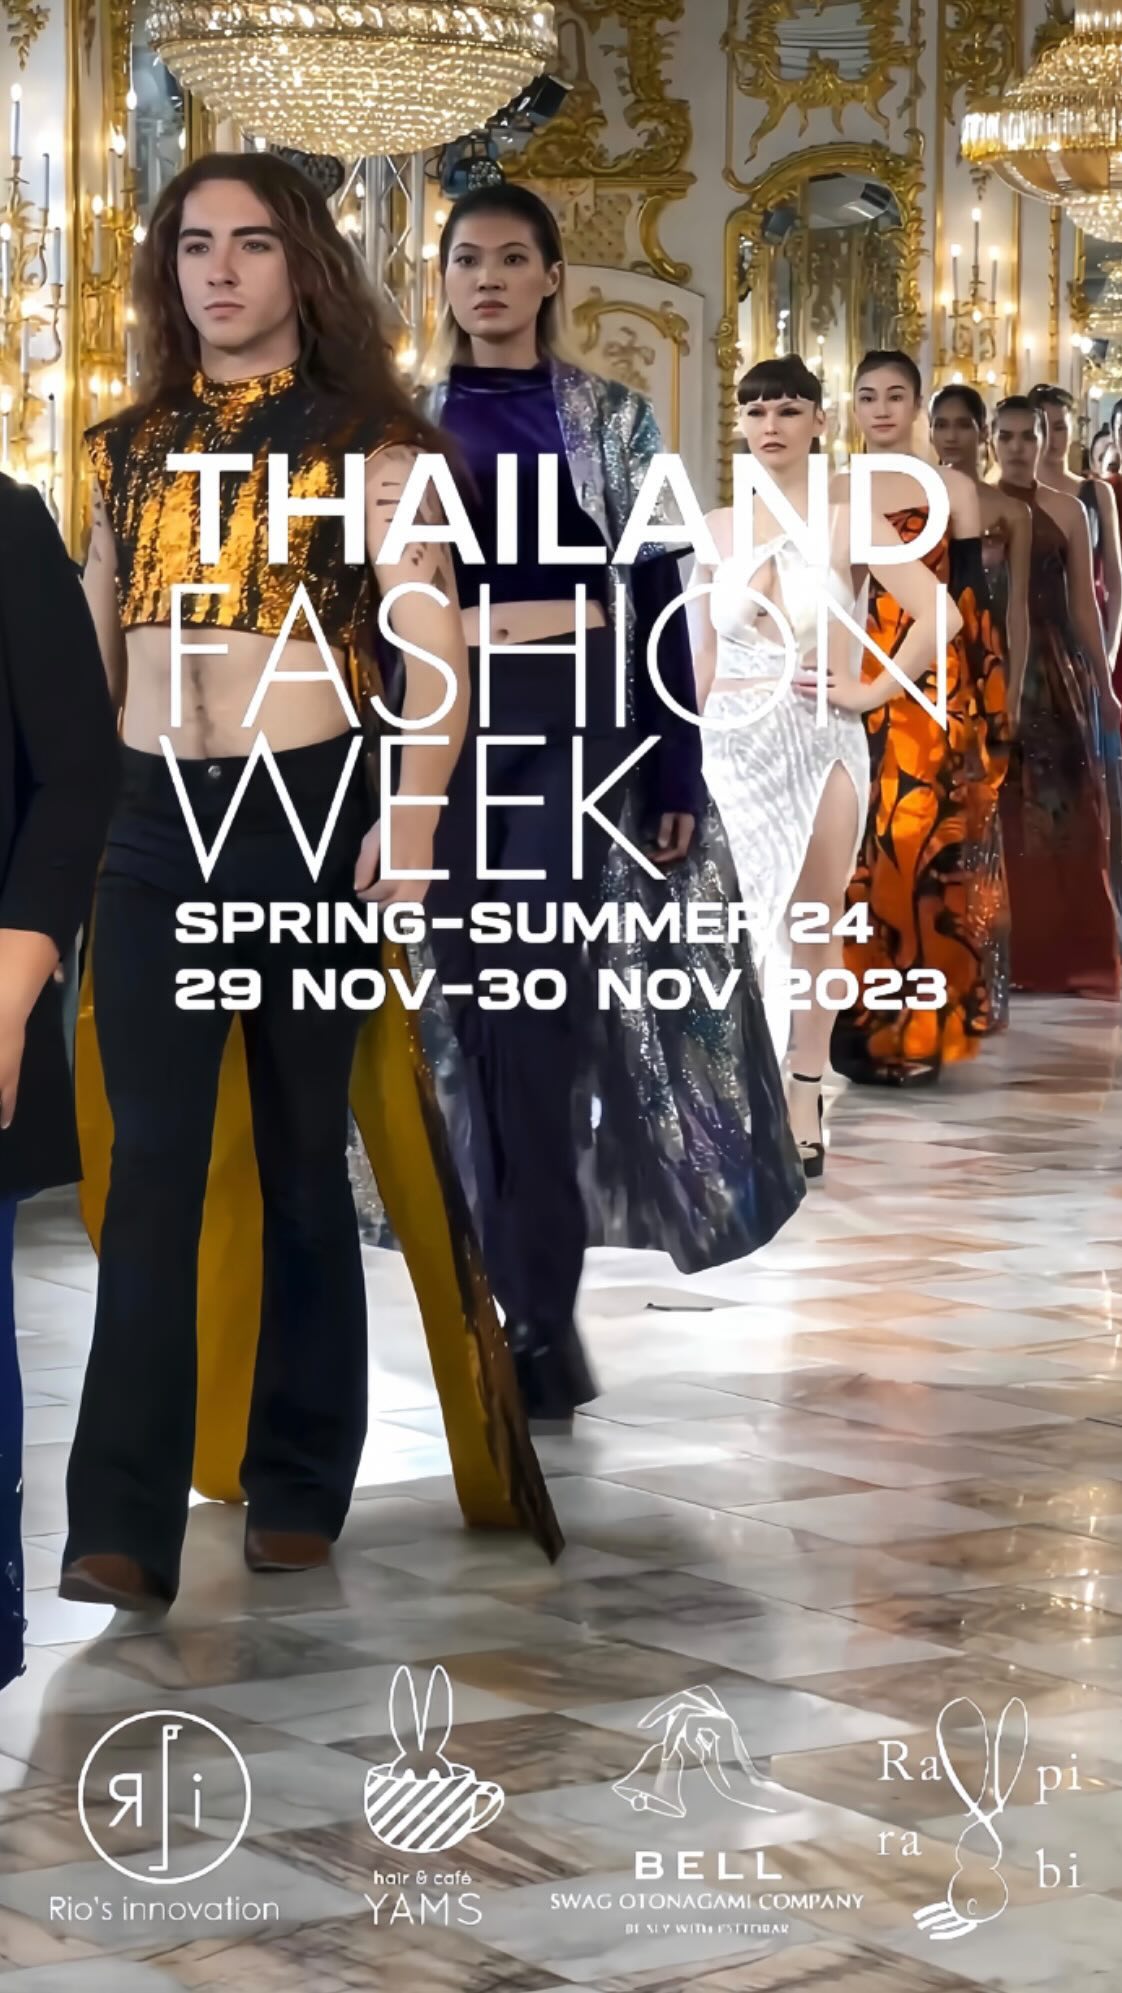 Thailand Fashion Week  Spring-Summer 😎  สามารถติดต่อสอบถามและจองคิวมาได้เลยนะคะ 
TEL 02-000-3001  F.B BELL Otonagami salon  LINE ID@skk6845h  #ร้านทำผมญี่ปุ่น #ร้านทำสีผมไม่เสีย #ออกแบบทรงผม #สีผมสุดฮิต  #สีผมสวยๆ #ผมสวย #ตัดผม #สีผมสไตล์ญี่ปุ่น #ทรงผมสวยๆ #ช่างญี่ปุ่น